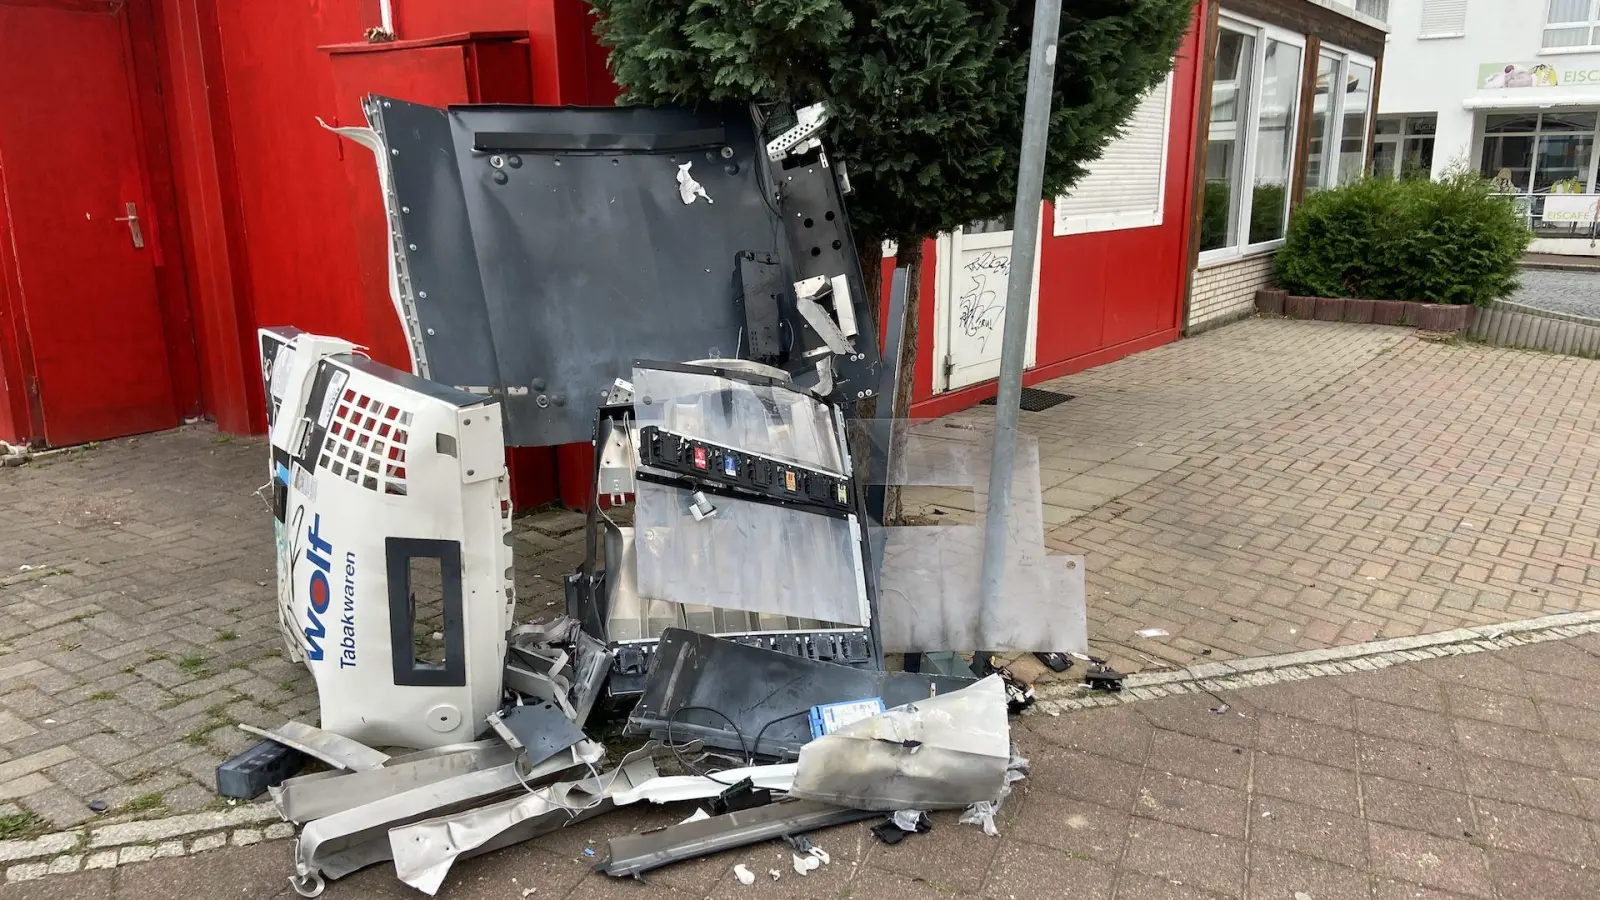 Unbekannte sprengen Zigarettenautomat in der Innenstadt (Foto: taucha-kompakt.de)